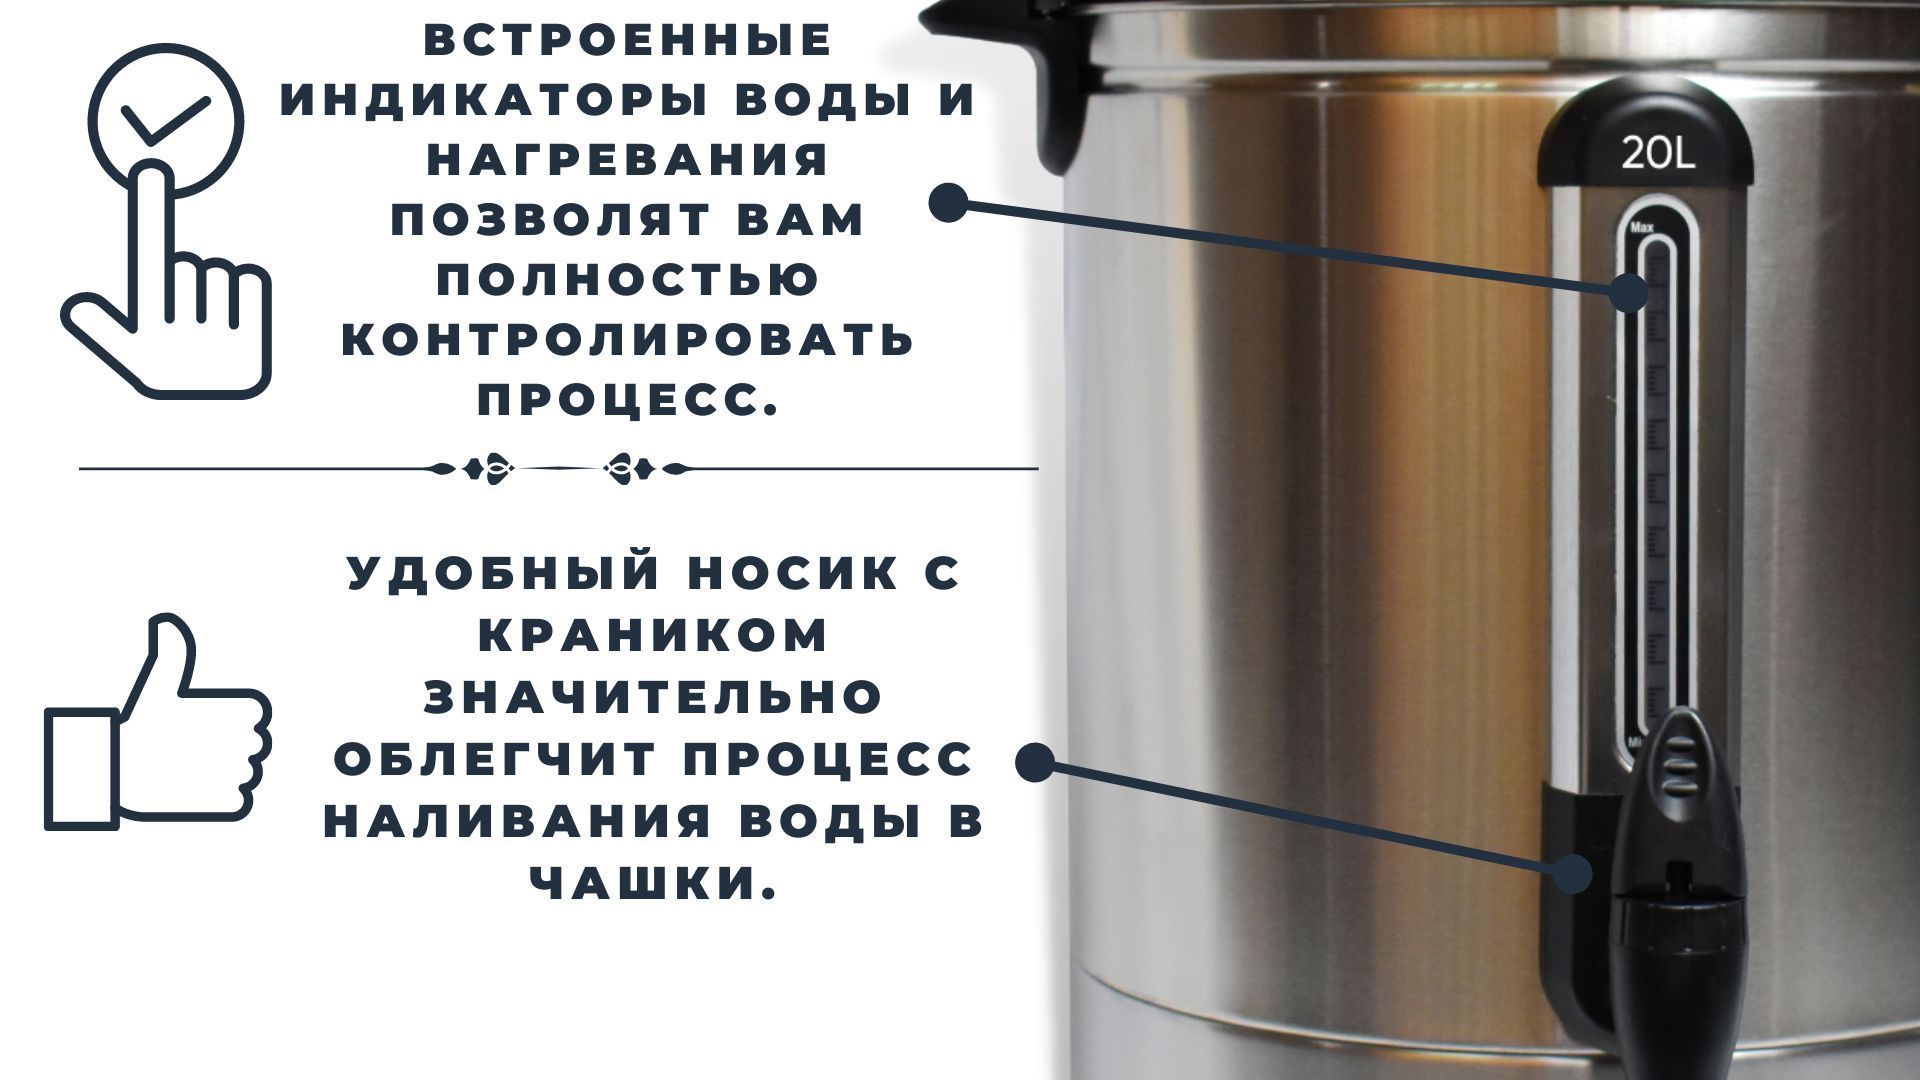 Термопот 20л Титан для общественных столовых. Термопот 20 литров. Термопот 12 литров. Термопот электрический, заливной, объемом 20 литров. Термопот сколько литров